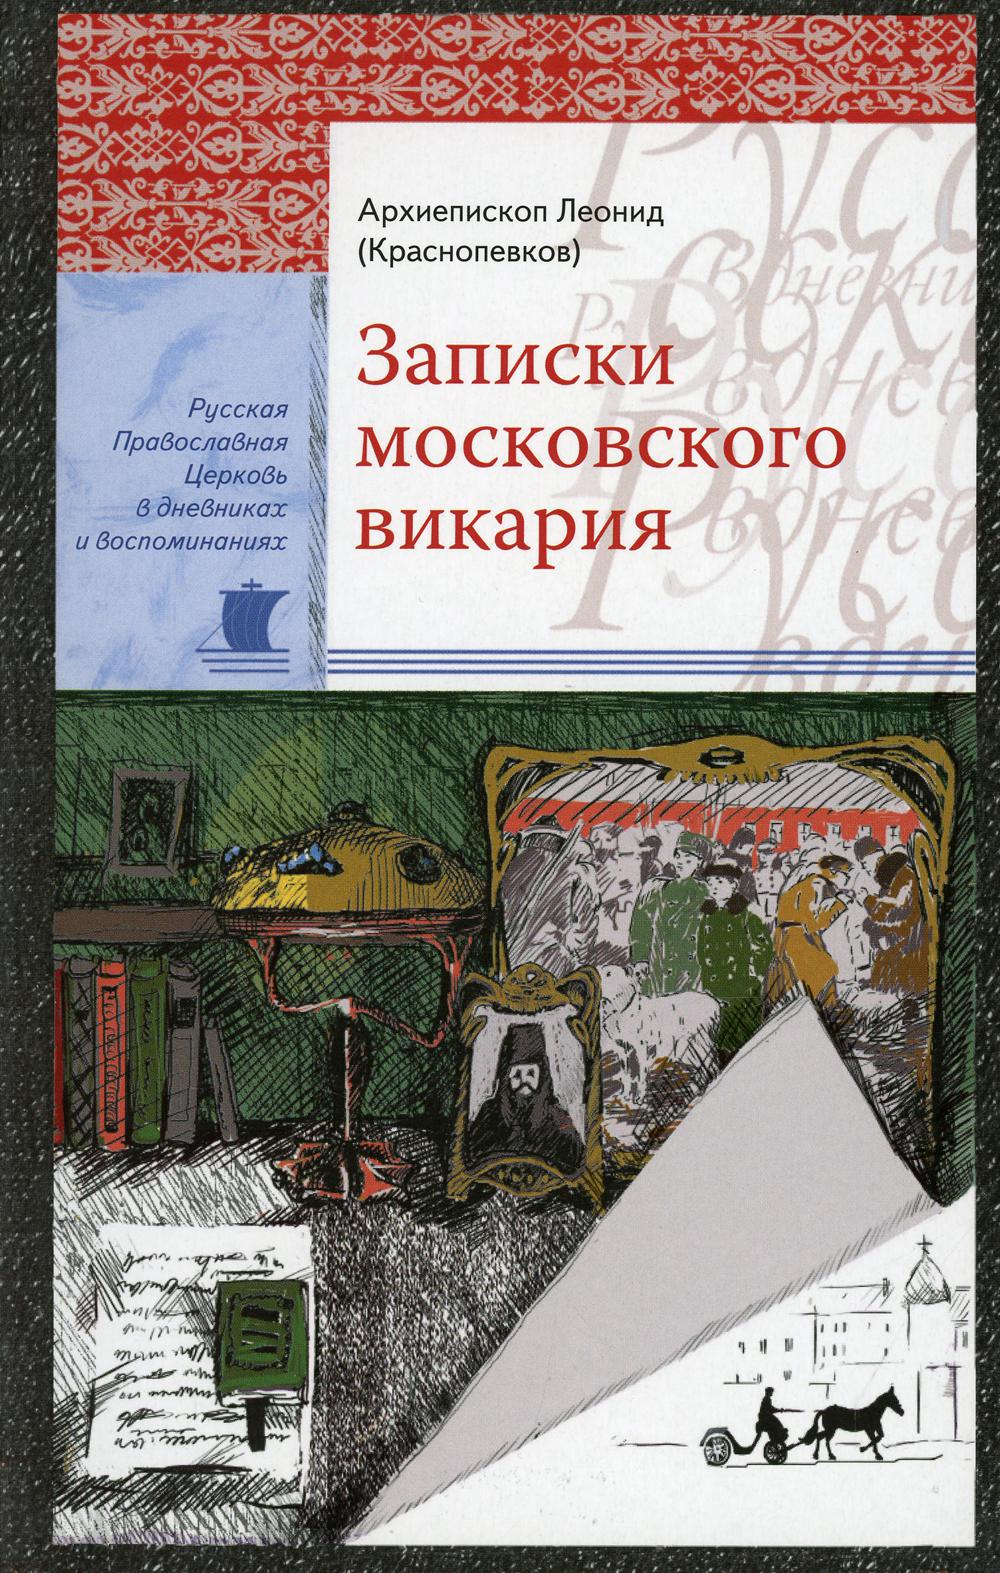 фото Книга записки московского викария сретенский монастырь